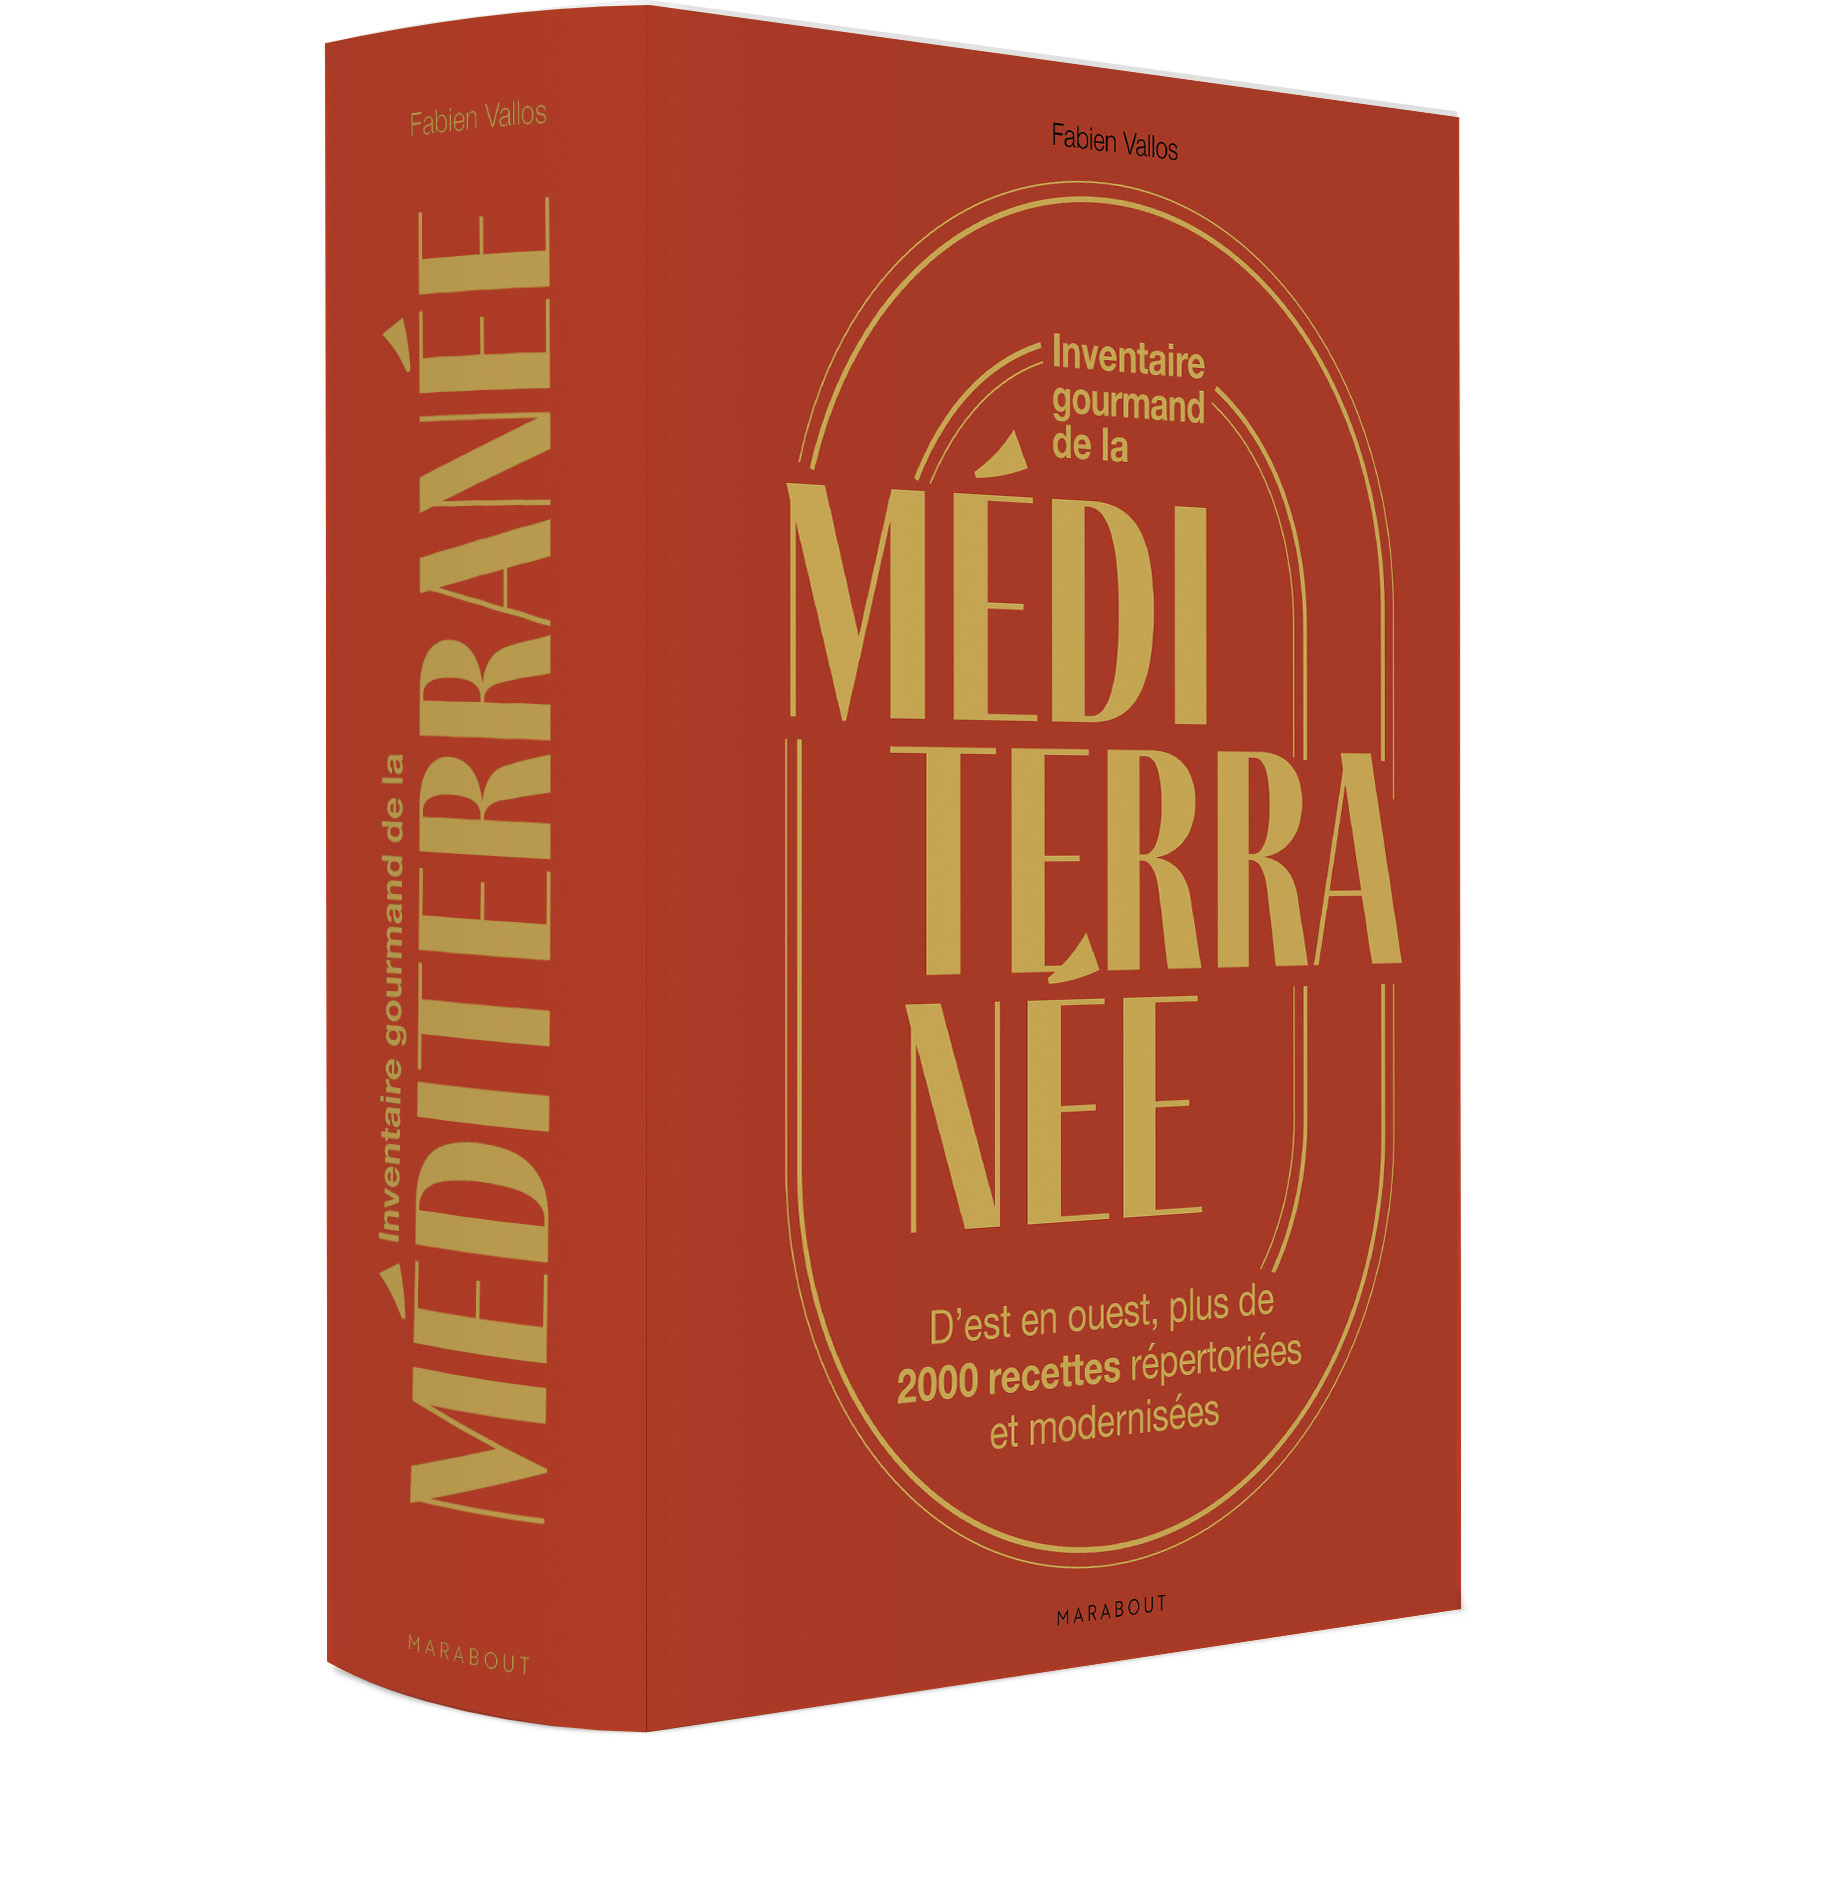 Les trésors gastronomiques méditerranéens recensés par Fabien Vallos